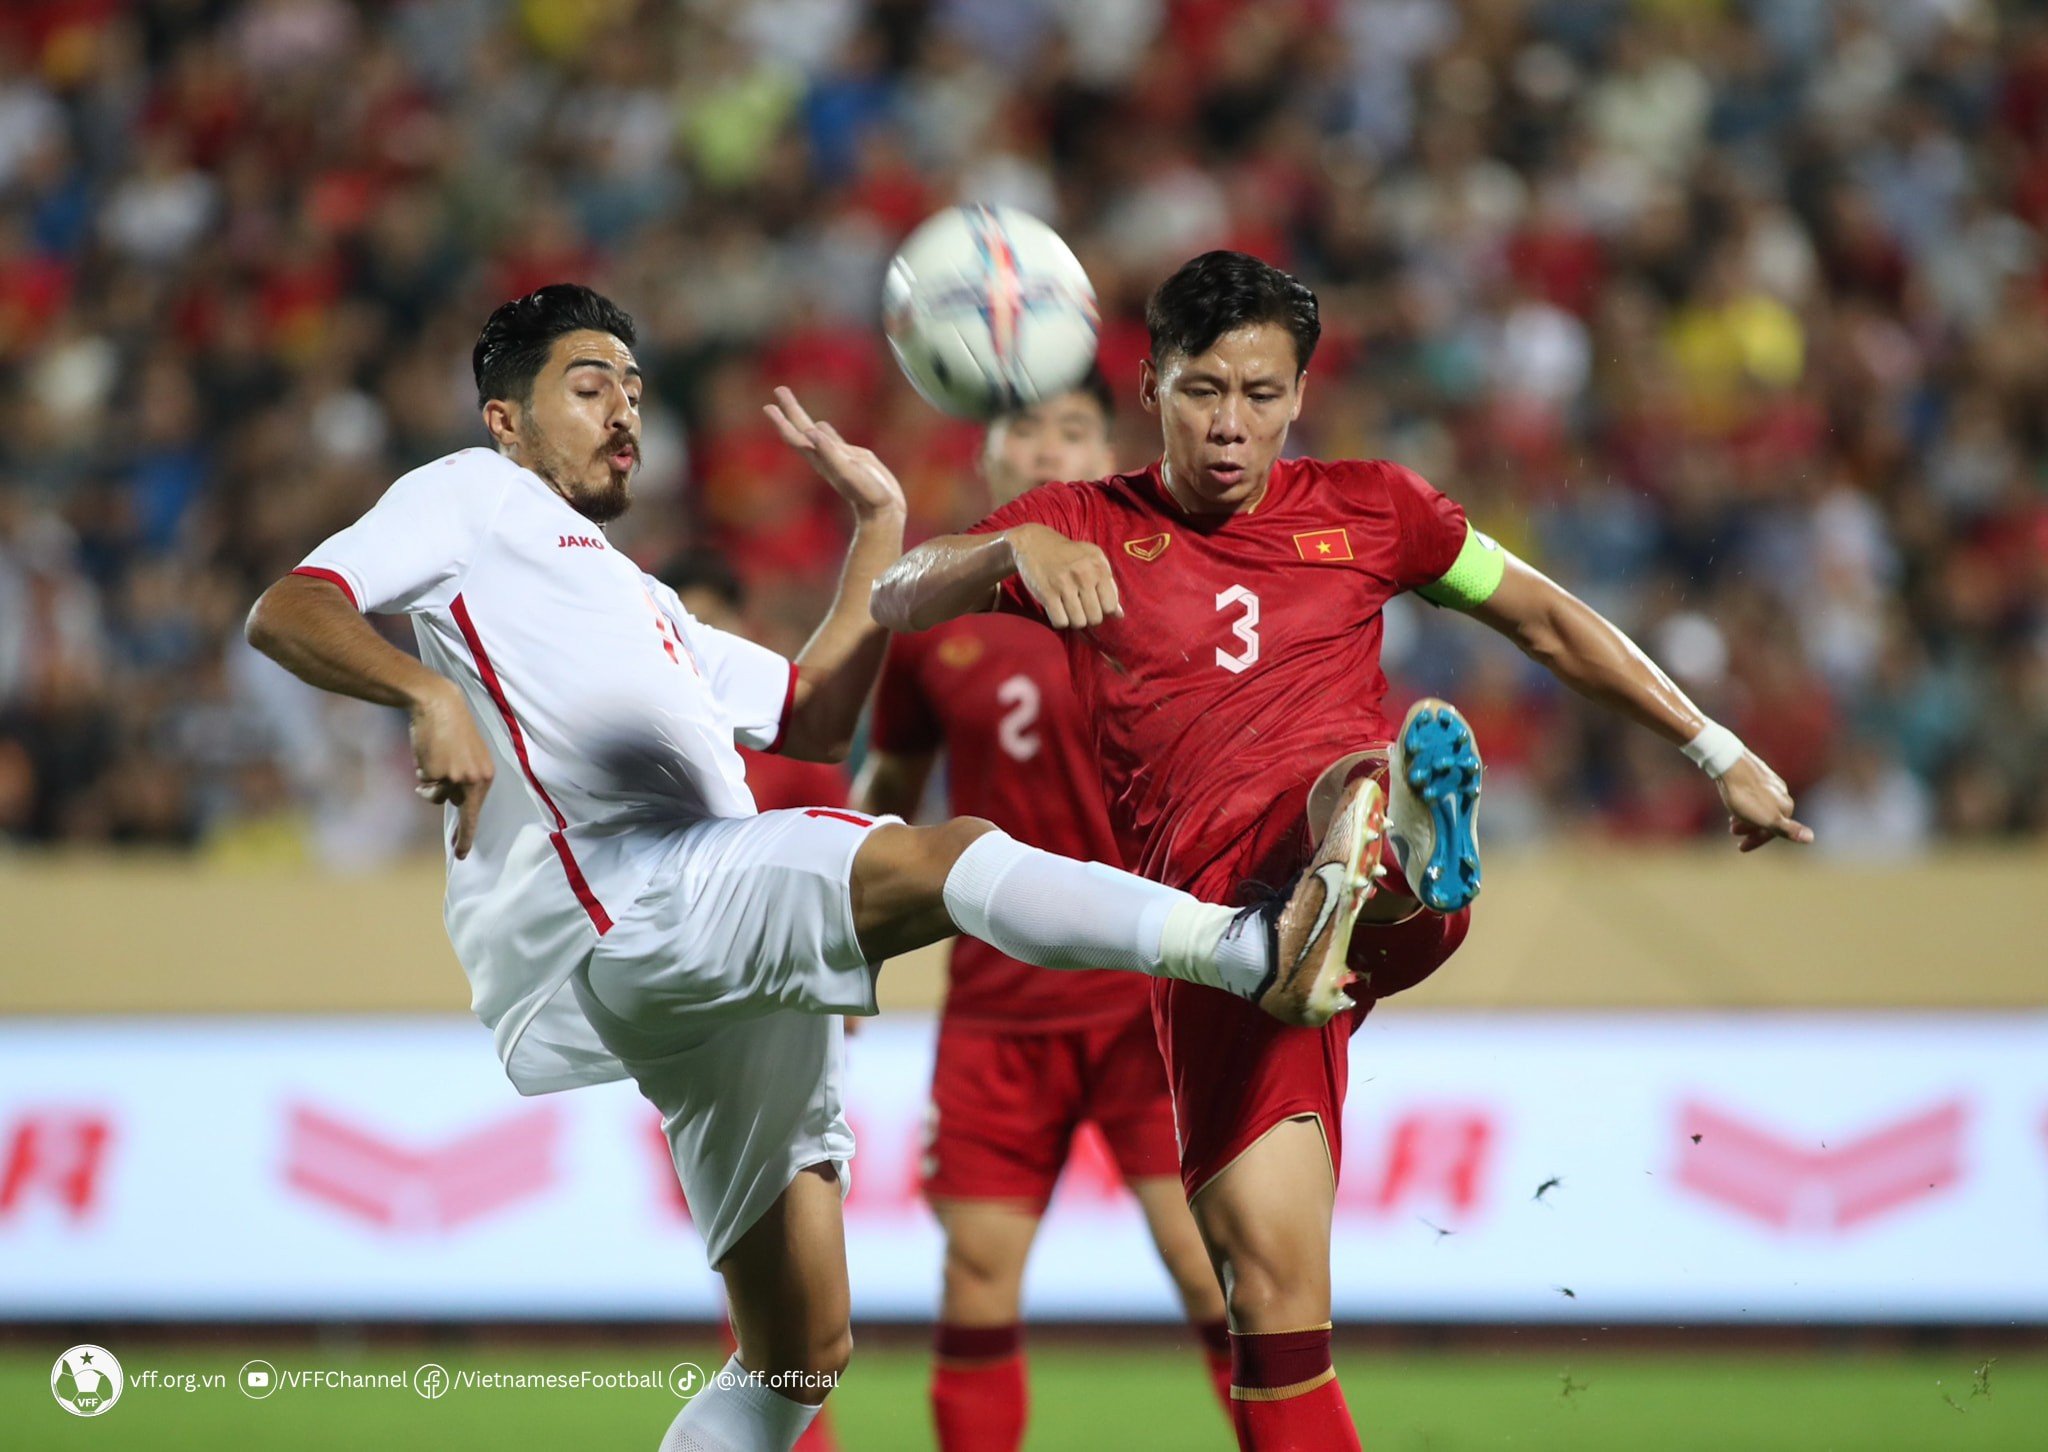 ĐT Việt Nam được FIFA cộng bao nhiêu điểm sau 2 chiến thắng trước Hong Kong và Syria? - Ảnh 2